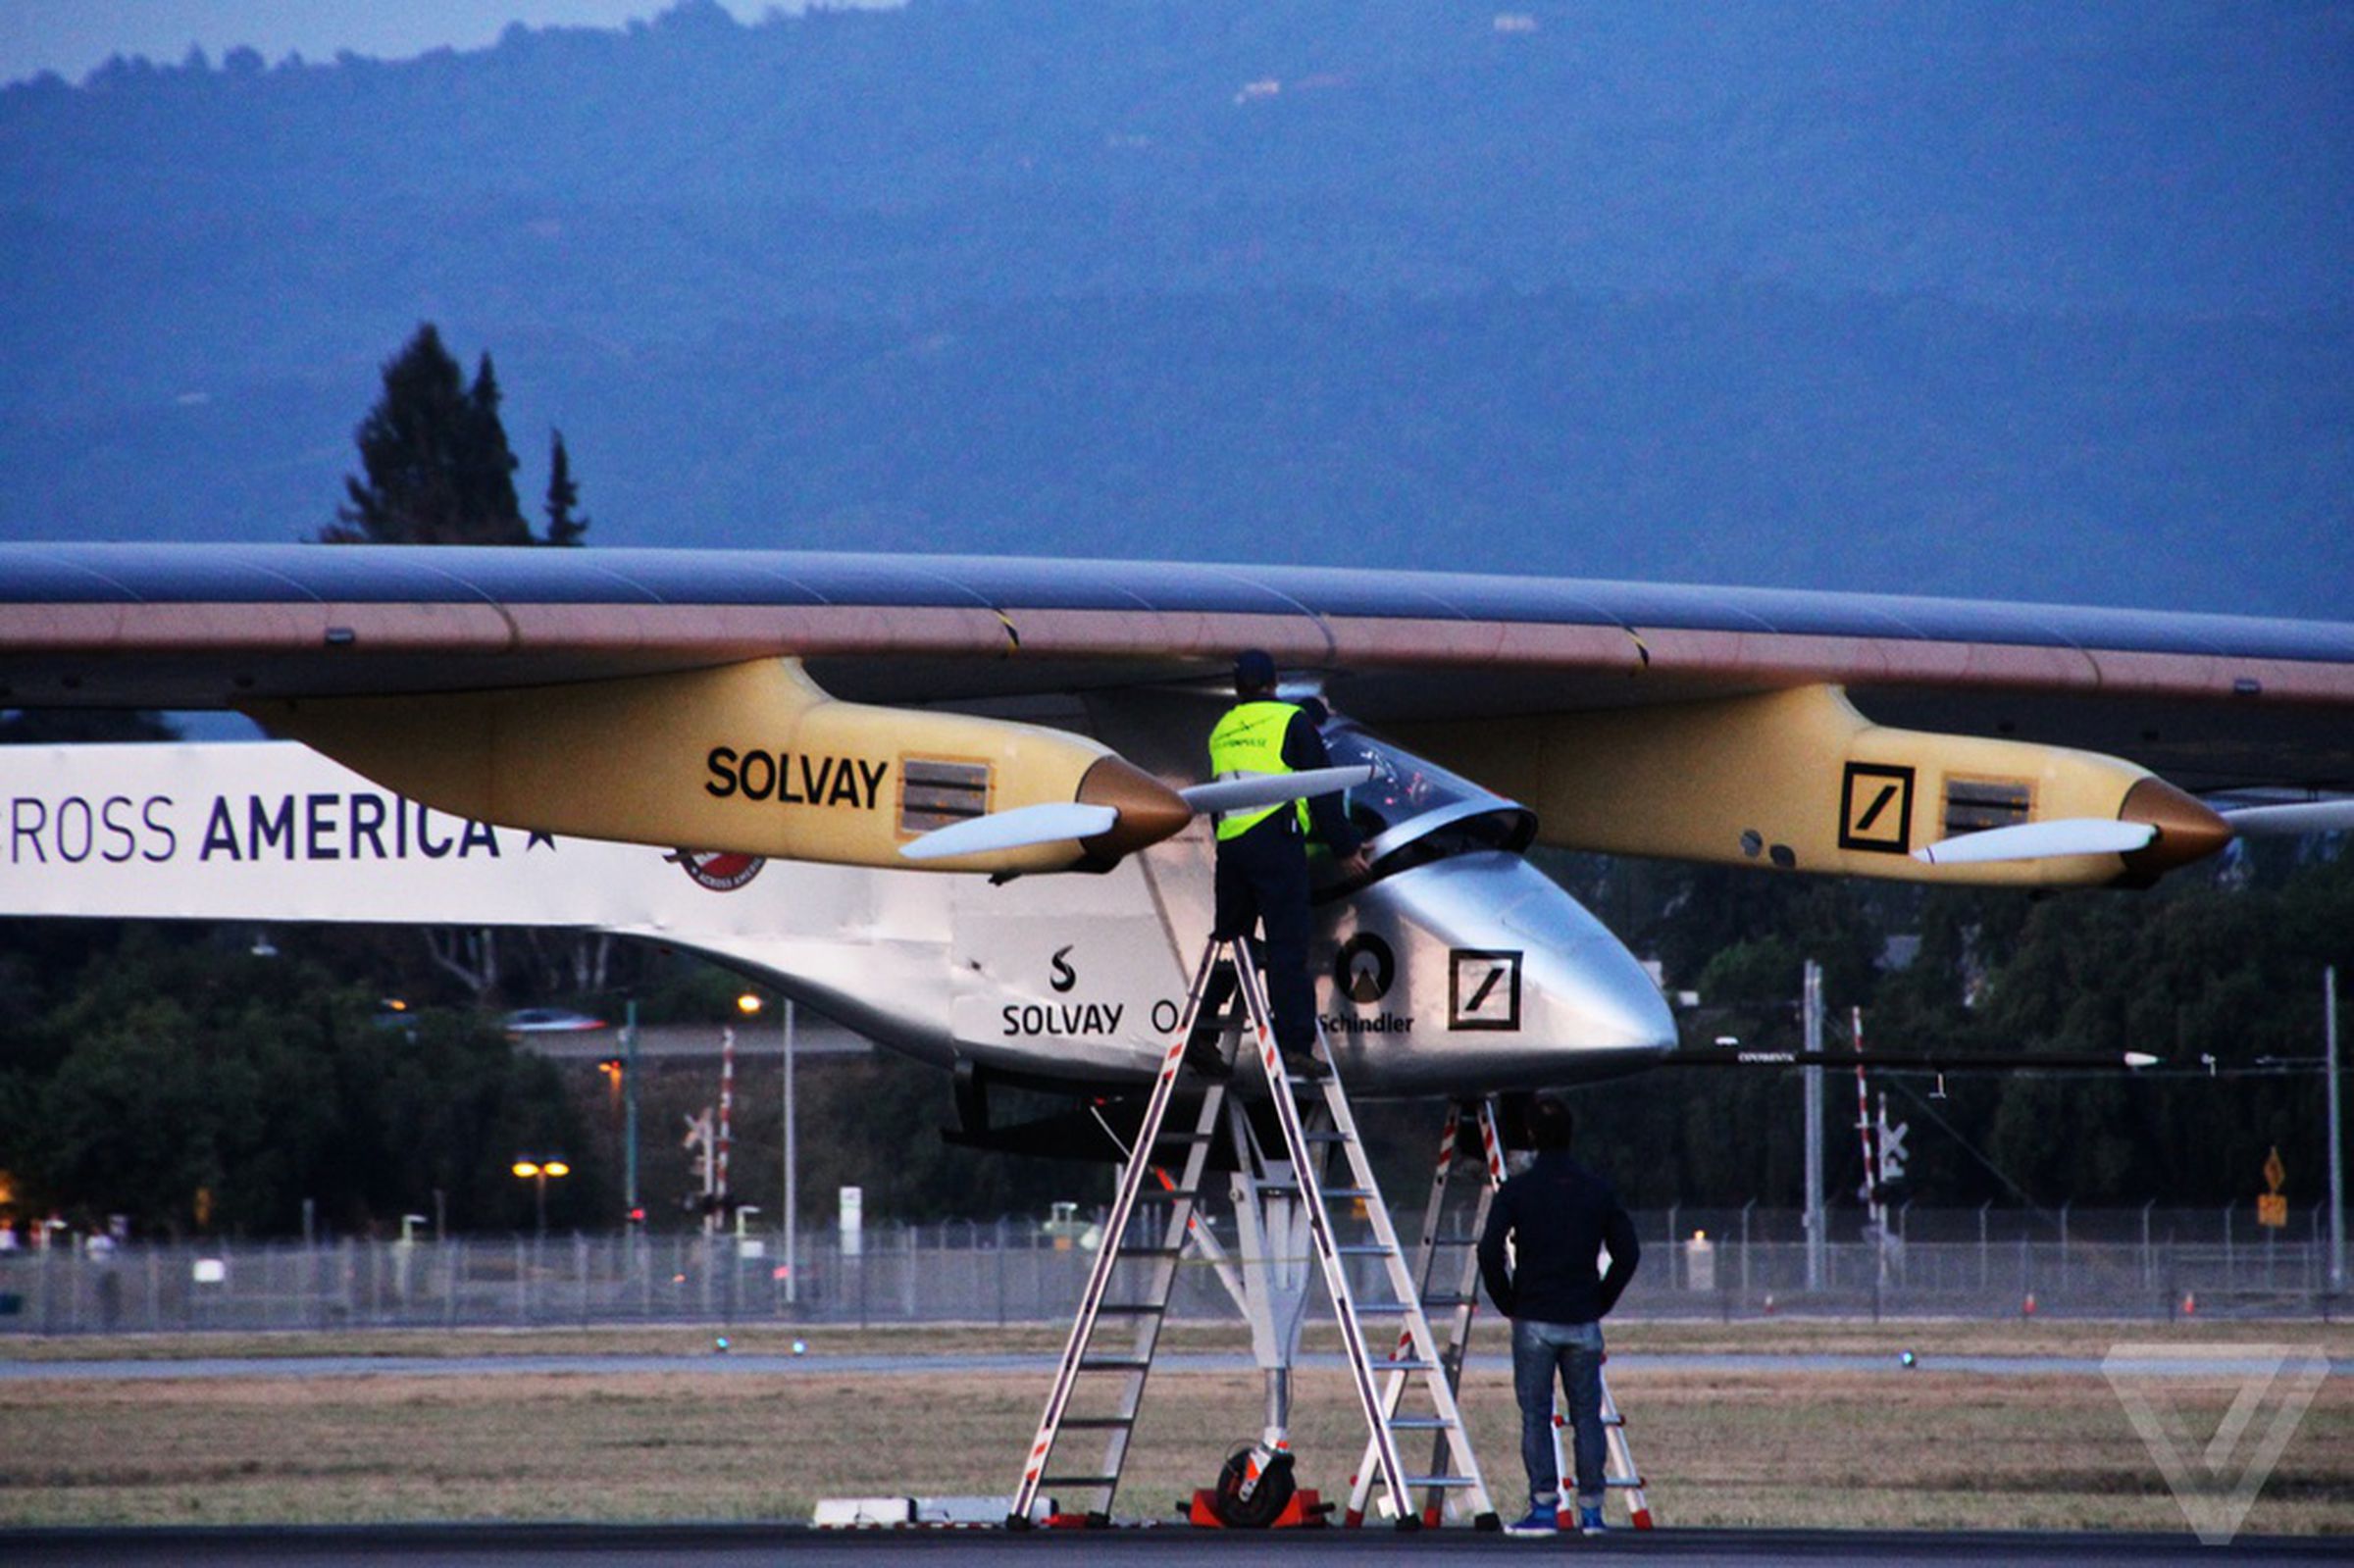 Solar Impulse plane at Moffett Field, May 3rd, 2013